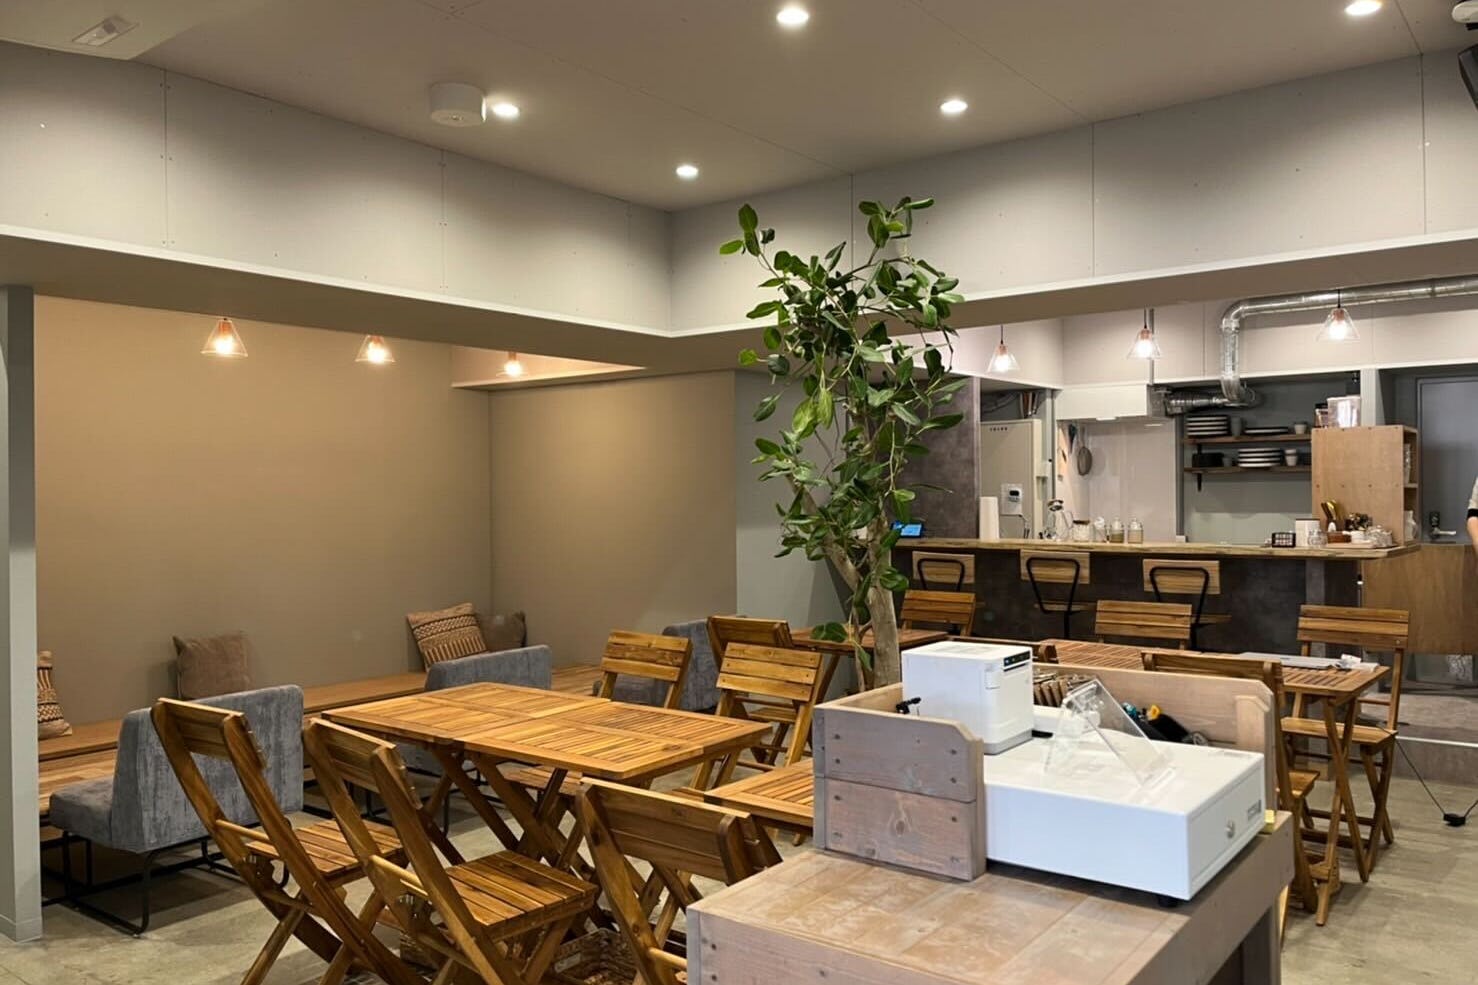 【中川駅徒歩4分】家族連れ向けのワークショップや女性、子供向けのイベント実施に最適な託児スペースとカフェが併設されたイベントスペース